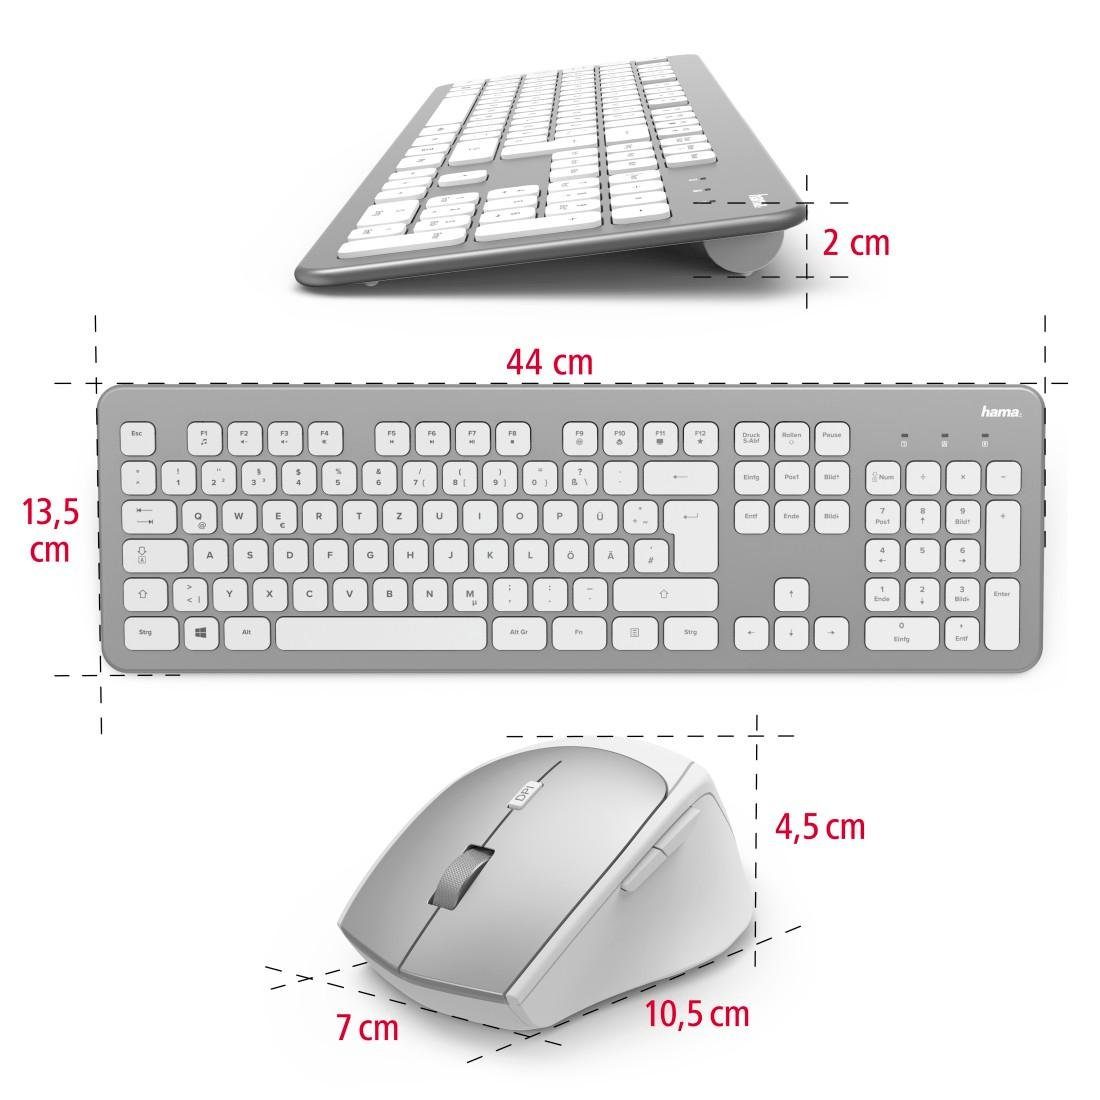 Tastatur/Maus-Set "KMW-700" Maus-Set Funktastatur-/Maus-Set Hama weiß Tastatur- und